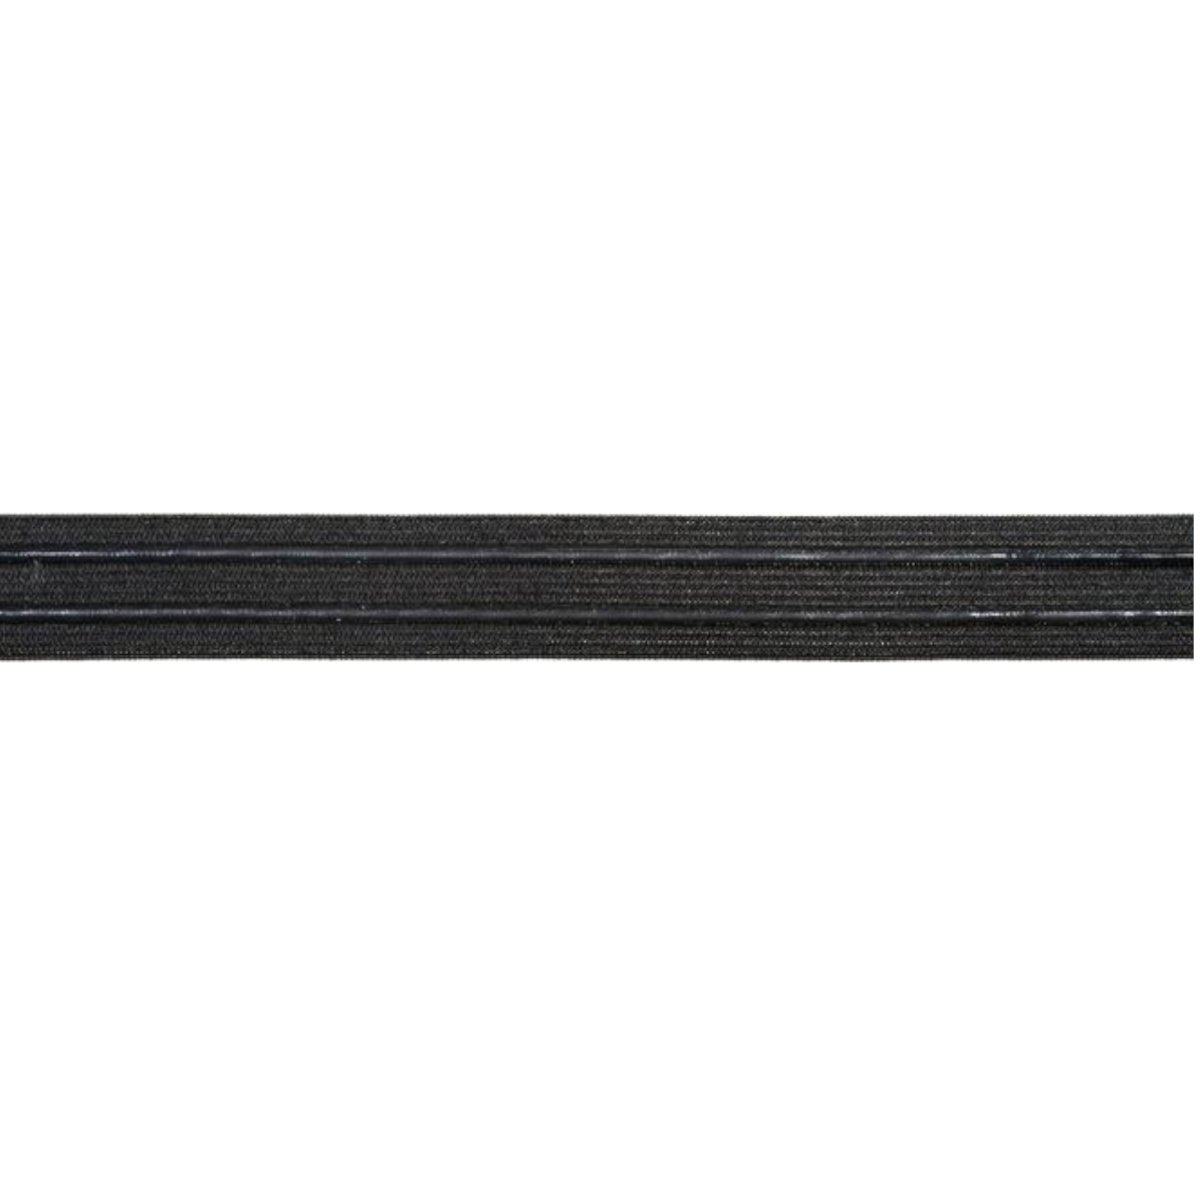 25mm Black Elastic Tape - Per Metre